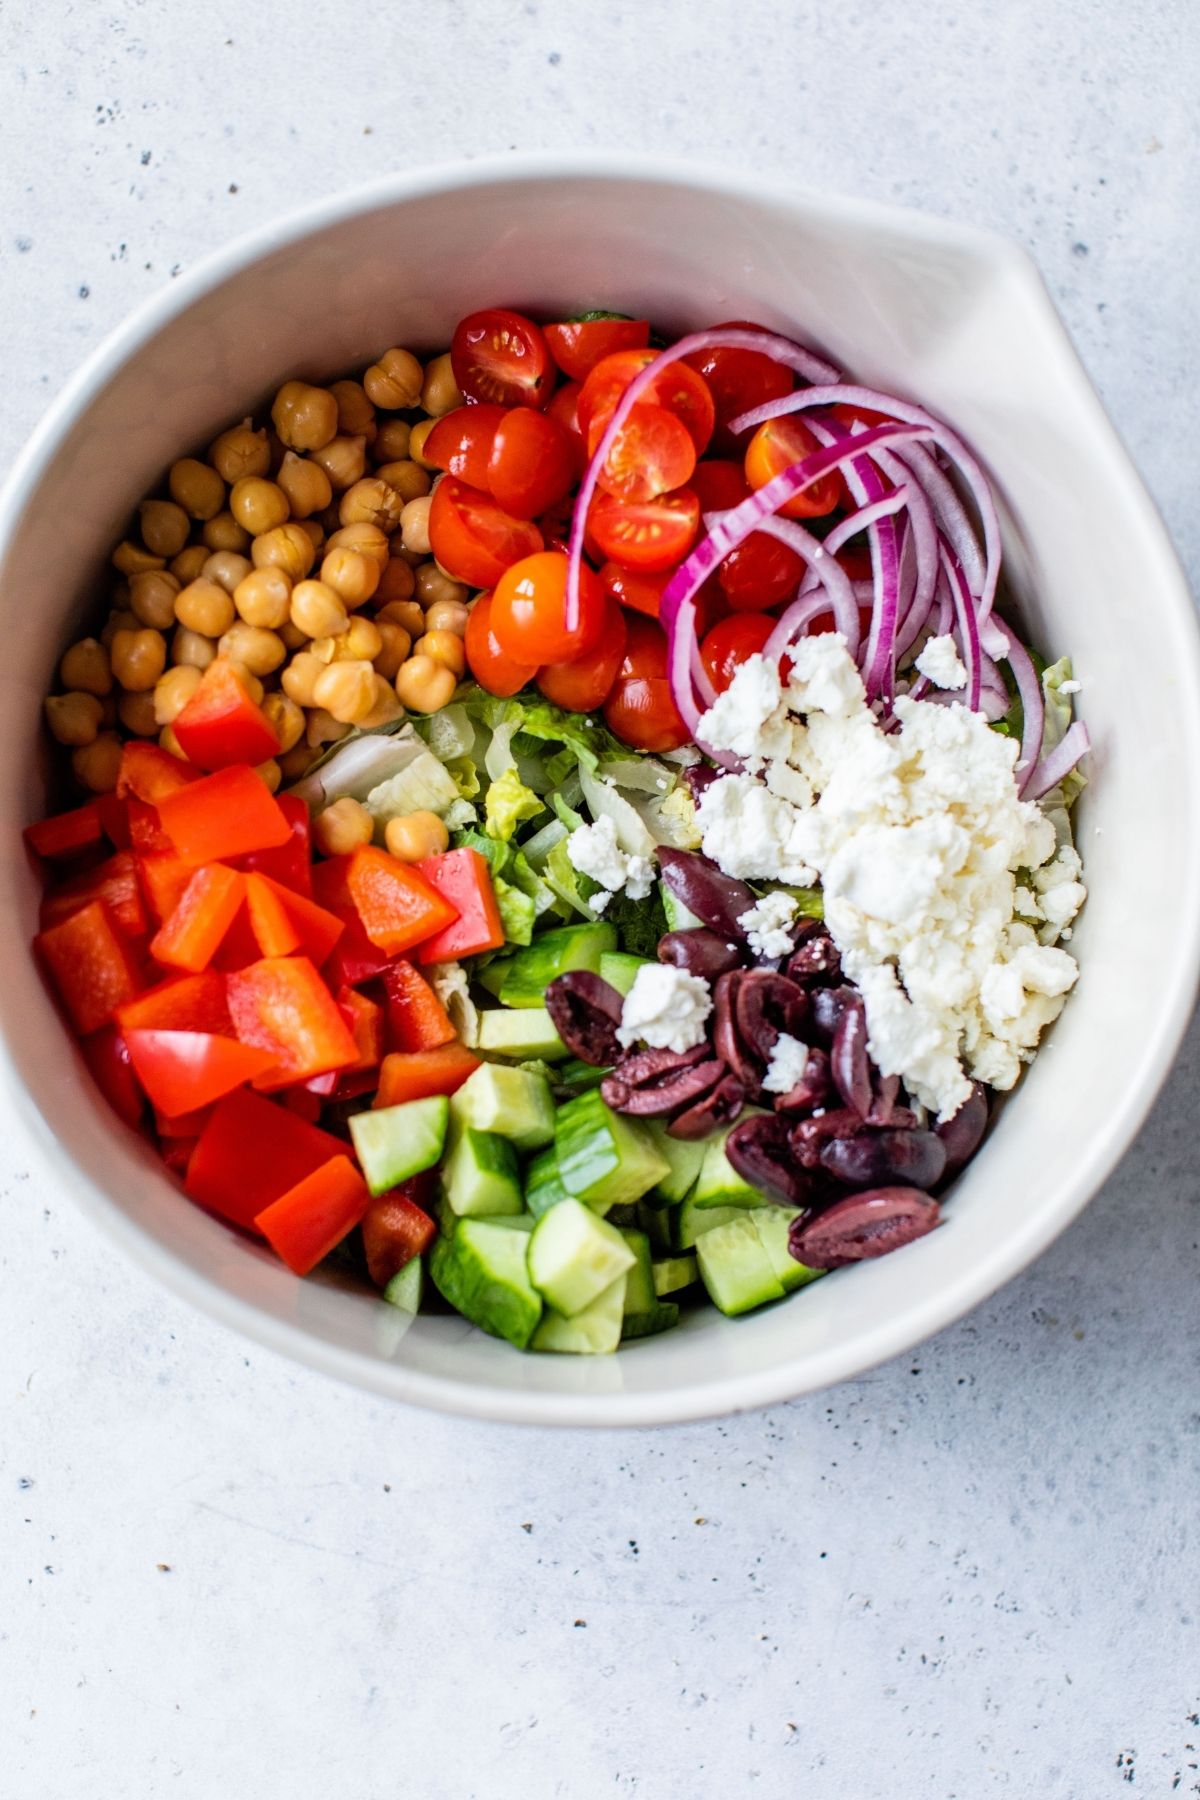 Greek Salad ingredients in a large bowl.